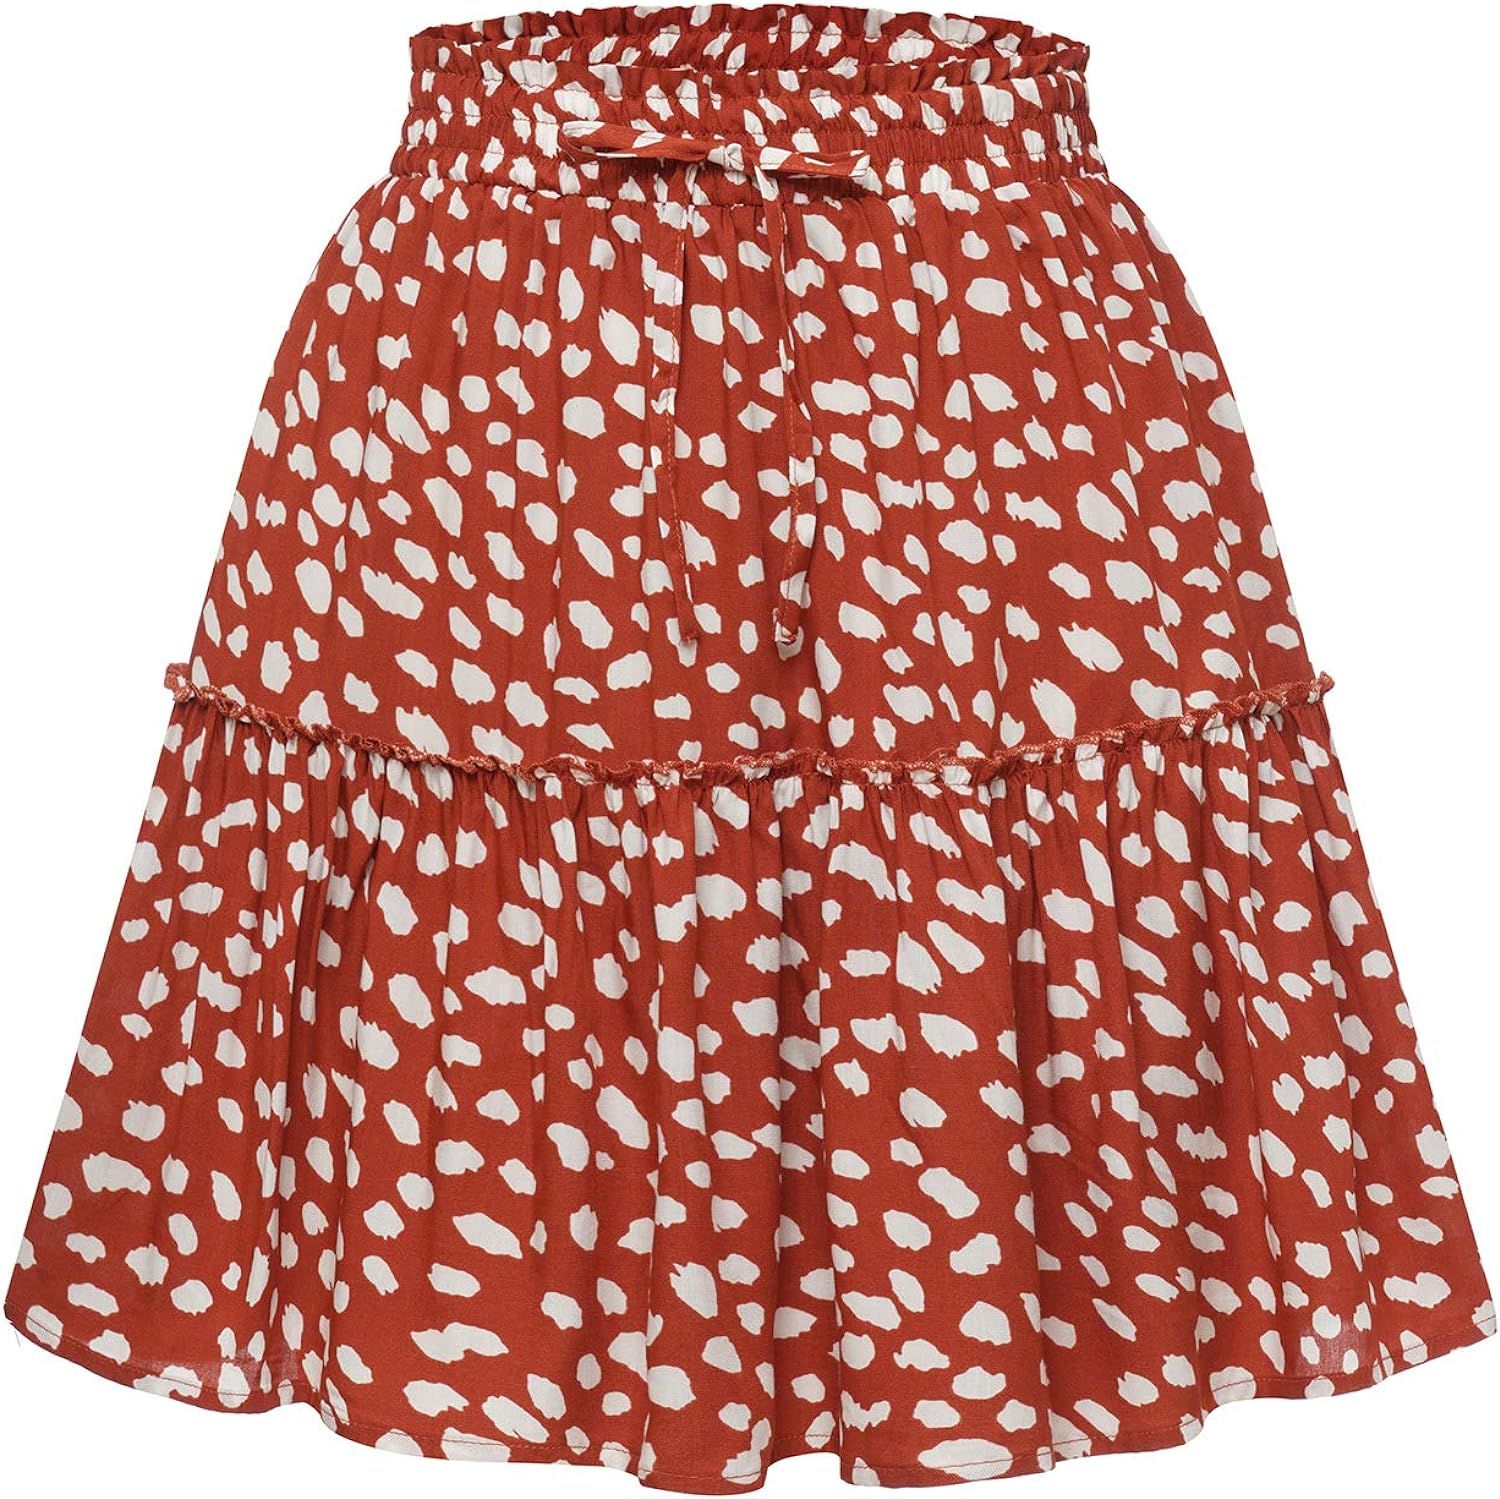 Bbonlinedress Women's Mini Floral Ruffle Skirt High Waisted Summer Boho Short Skater Skirt | Amazon (US)